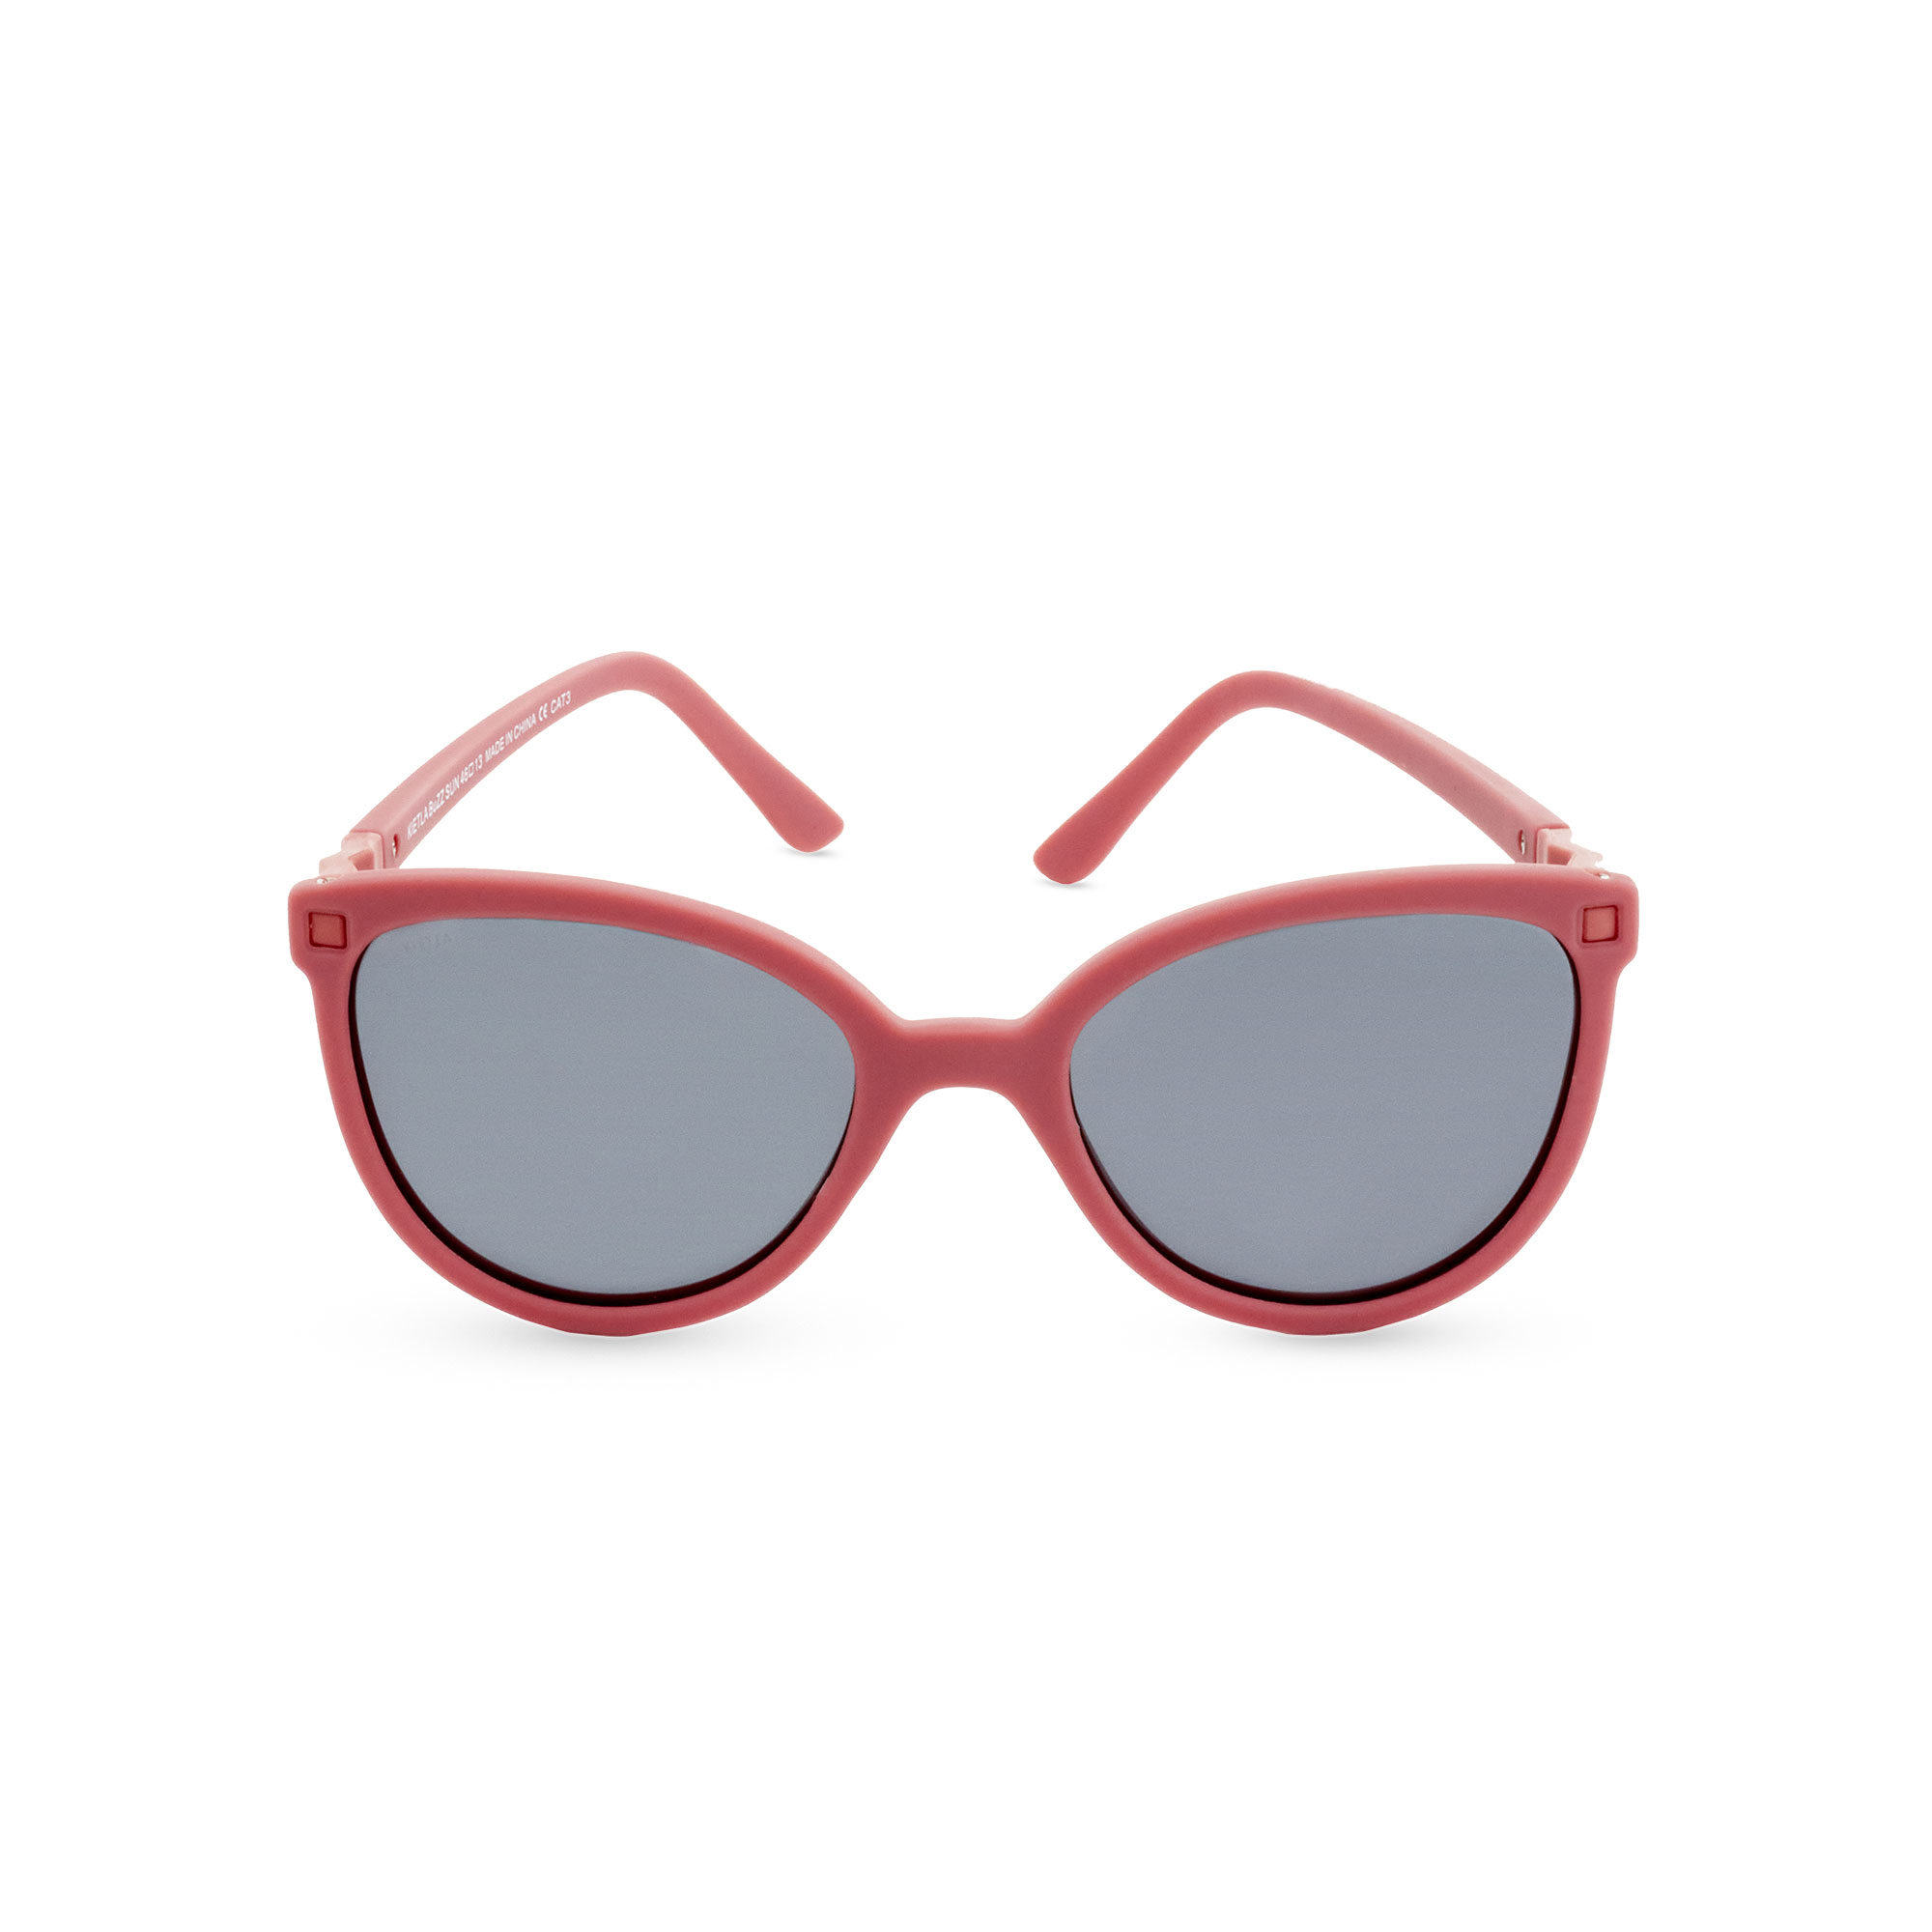 KiETLA CraZyg-Zag slnečné okuliare BuZZ 6-9 rokov Terracotta